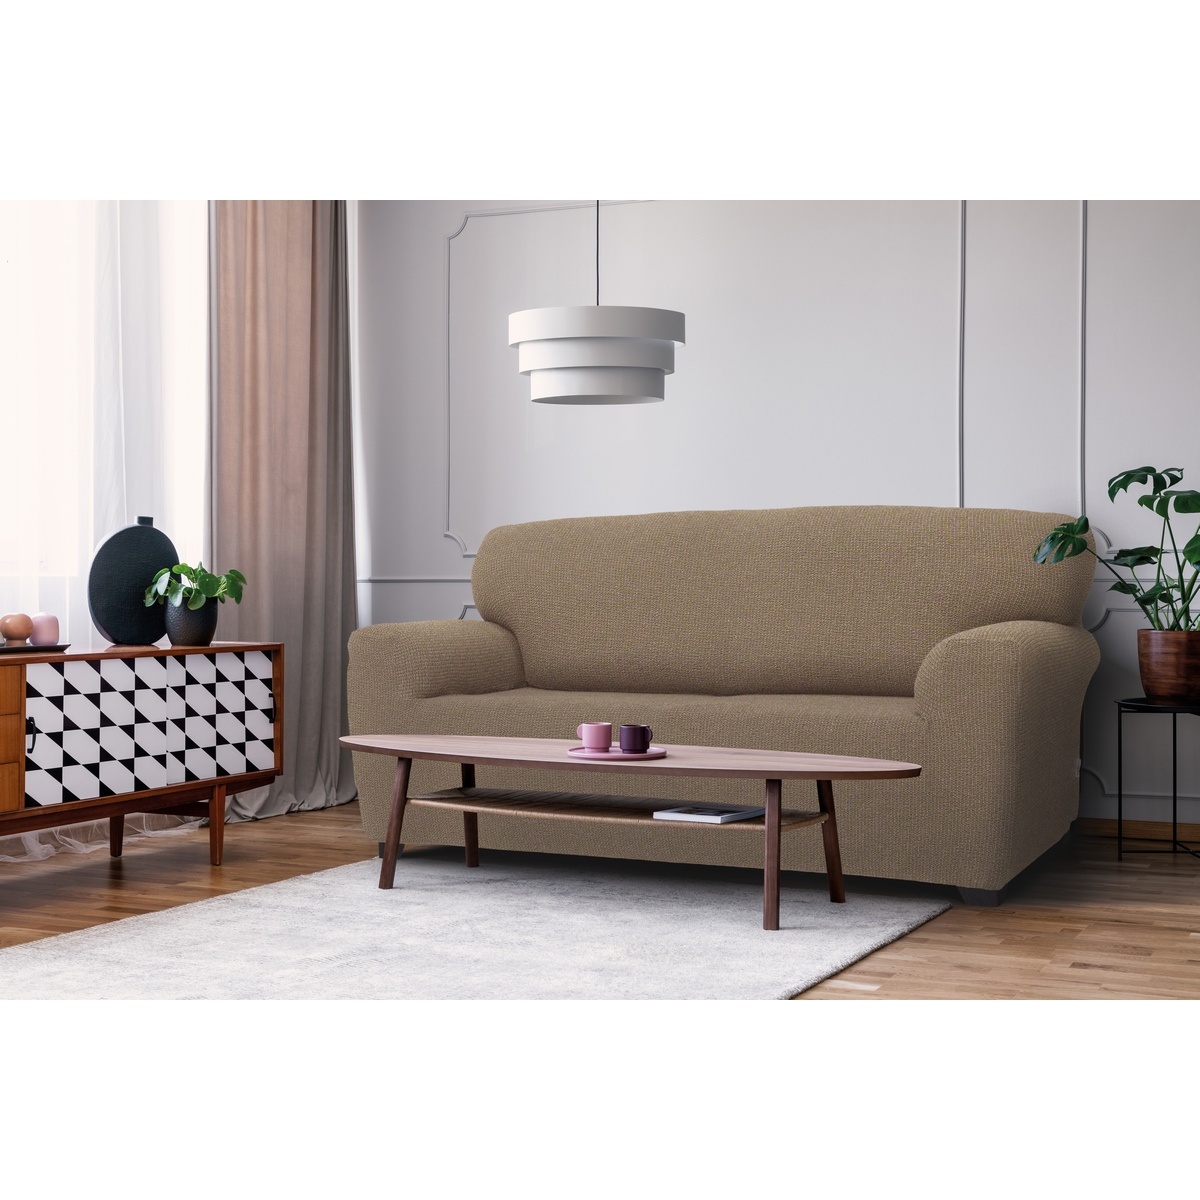 Denia multielasztikus kanapéhuzat, mogyoró színű , 140 - 180 cm, 140 - 180 cm